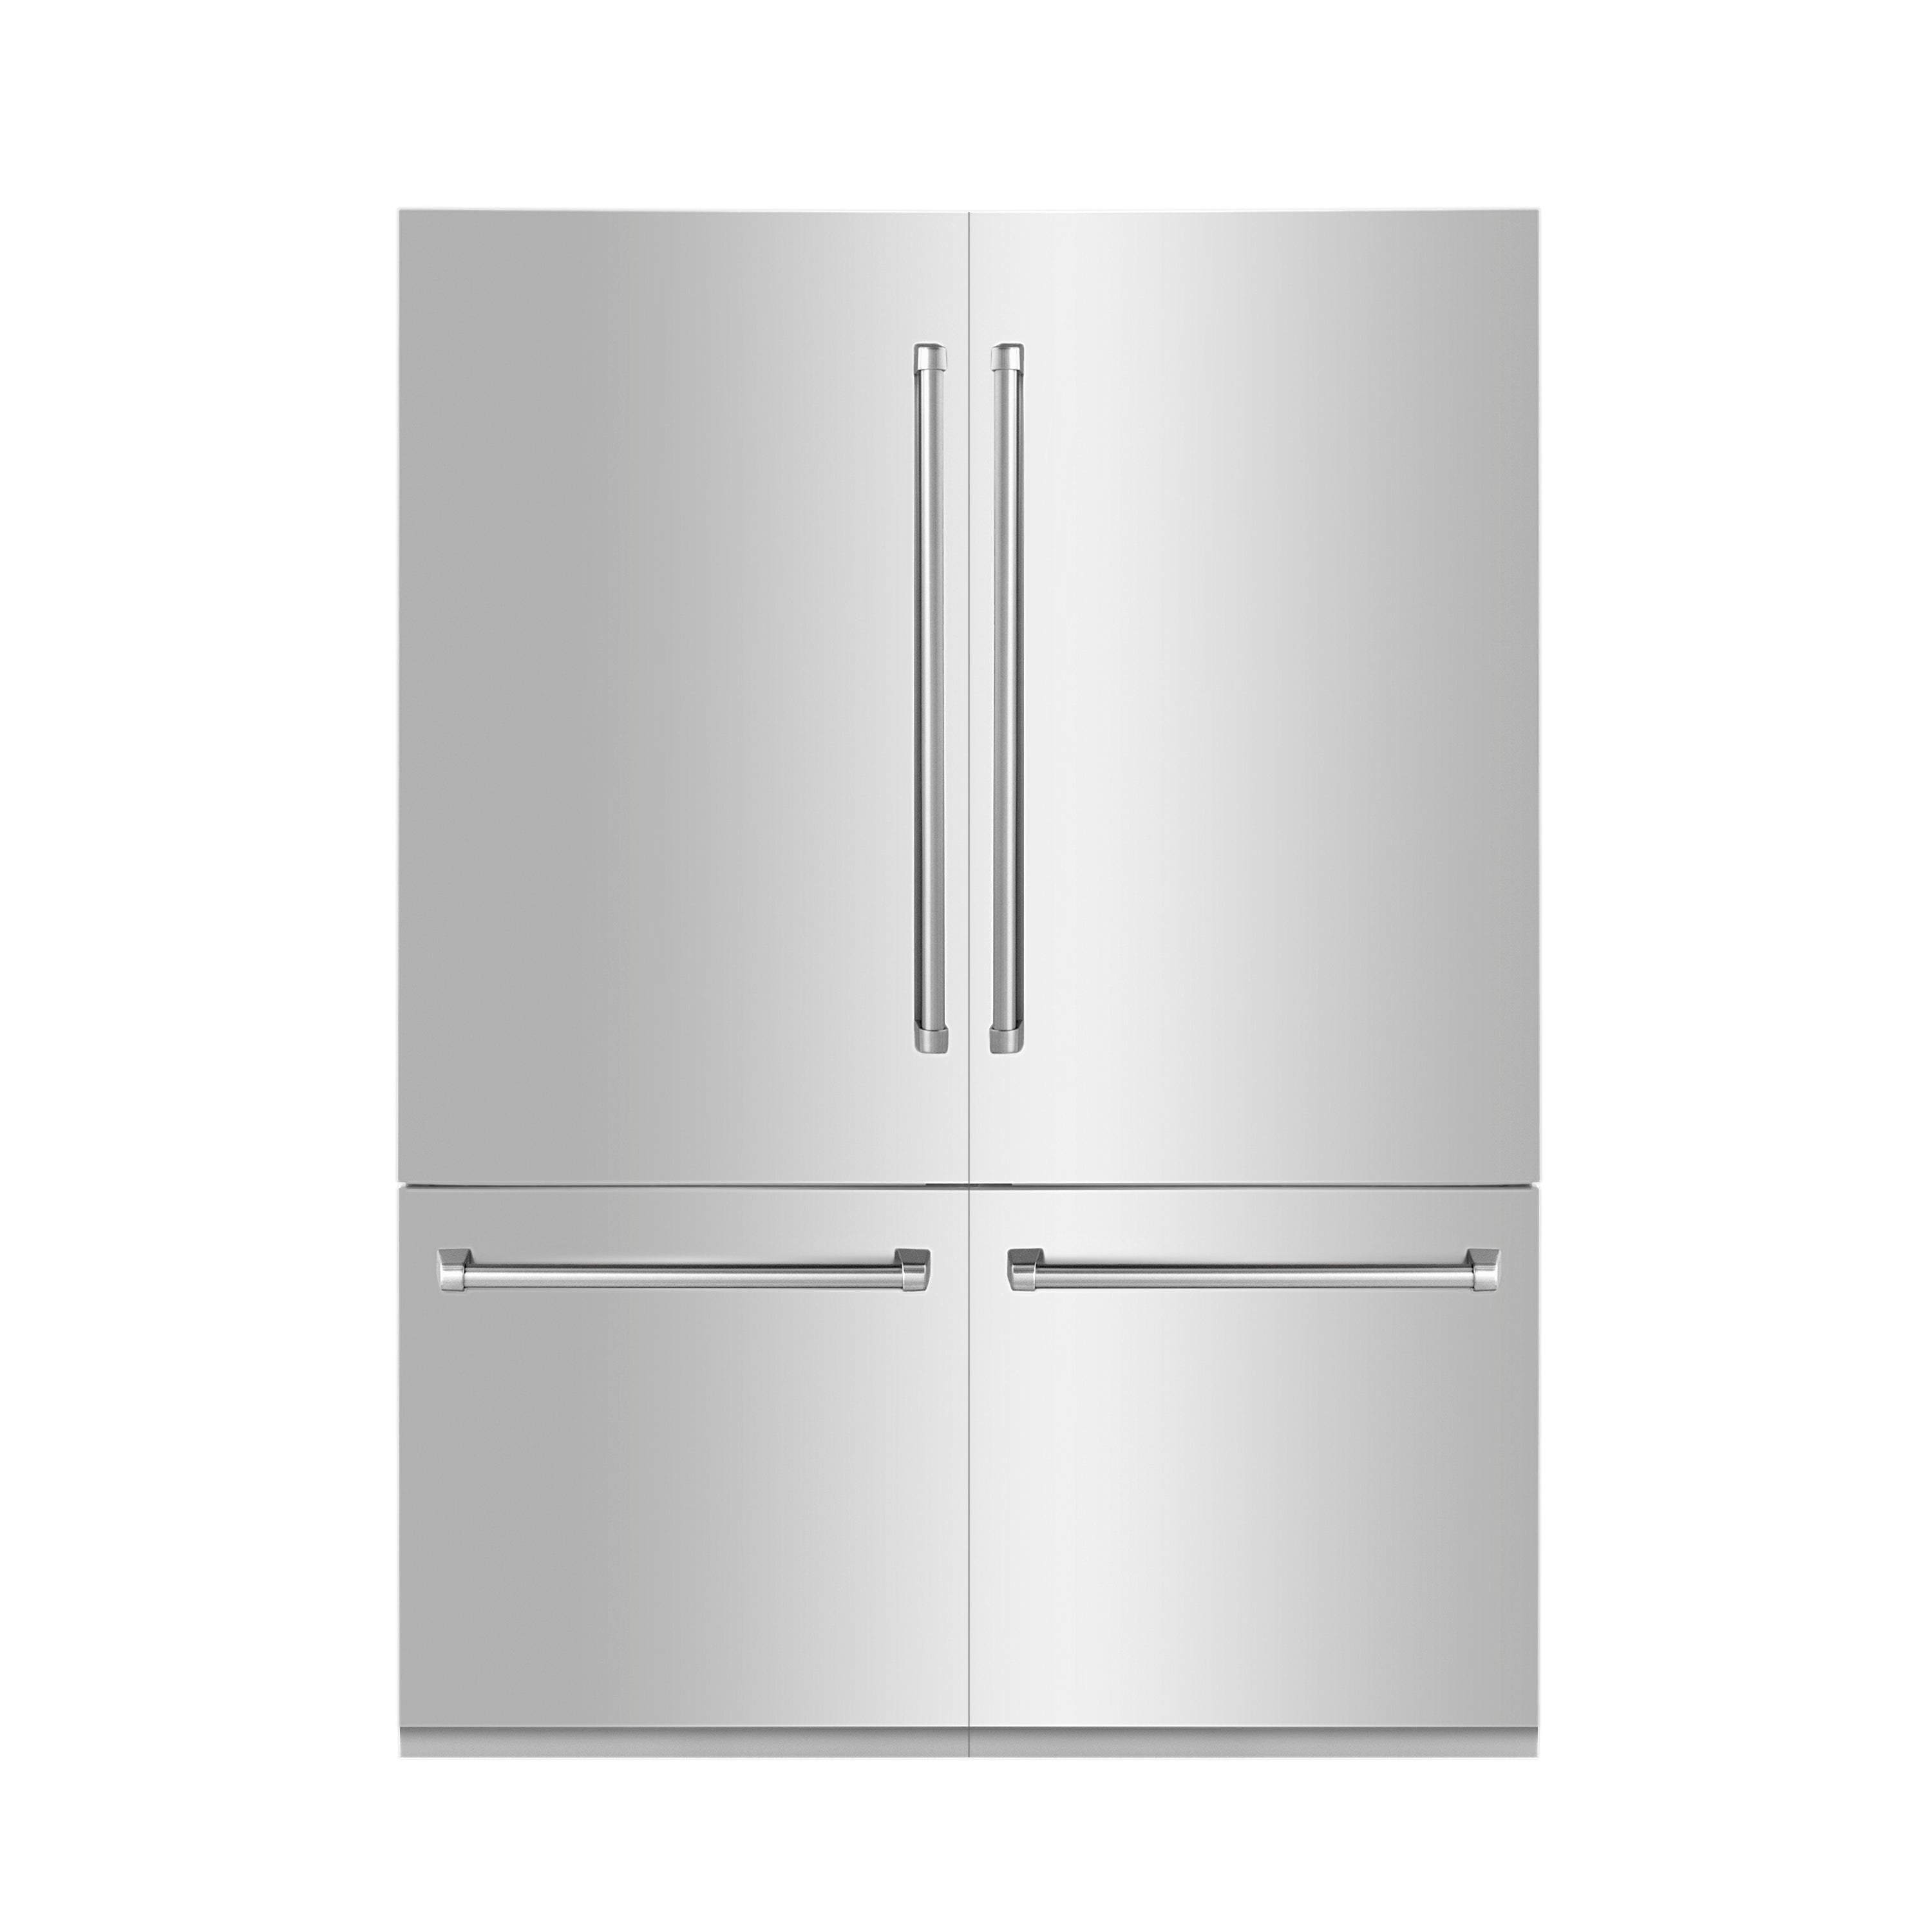 ZLINE 60" 32.2 cu. ft. Built-In 4-Door French Door Refrigerator with Internal Water and Ice Dispenser in Stainless Steel